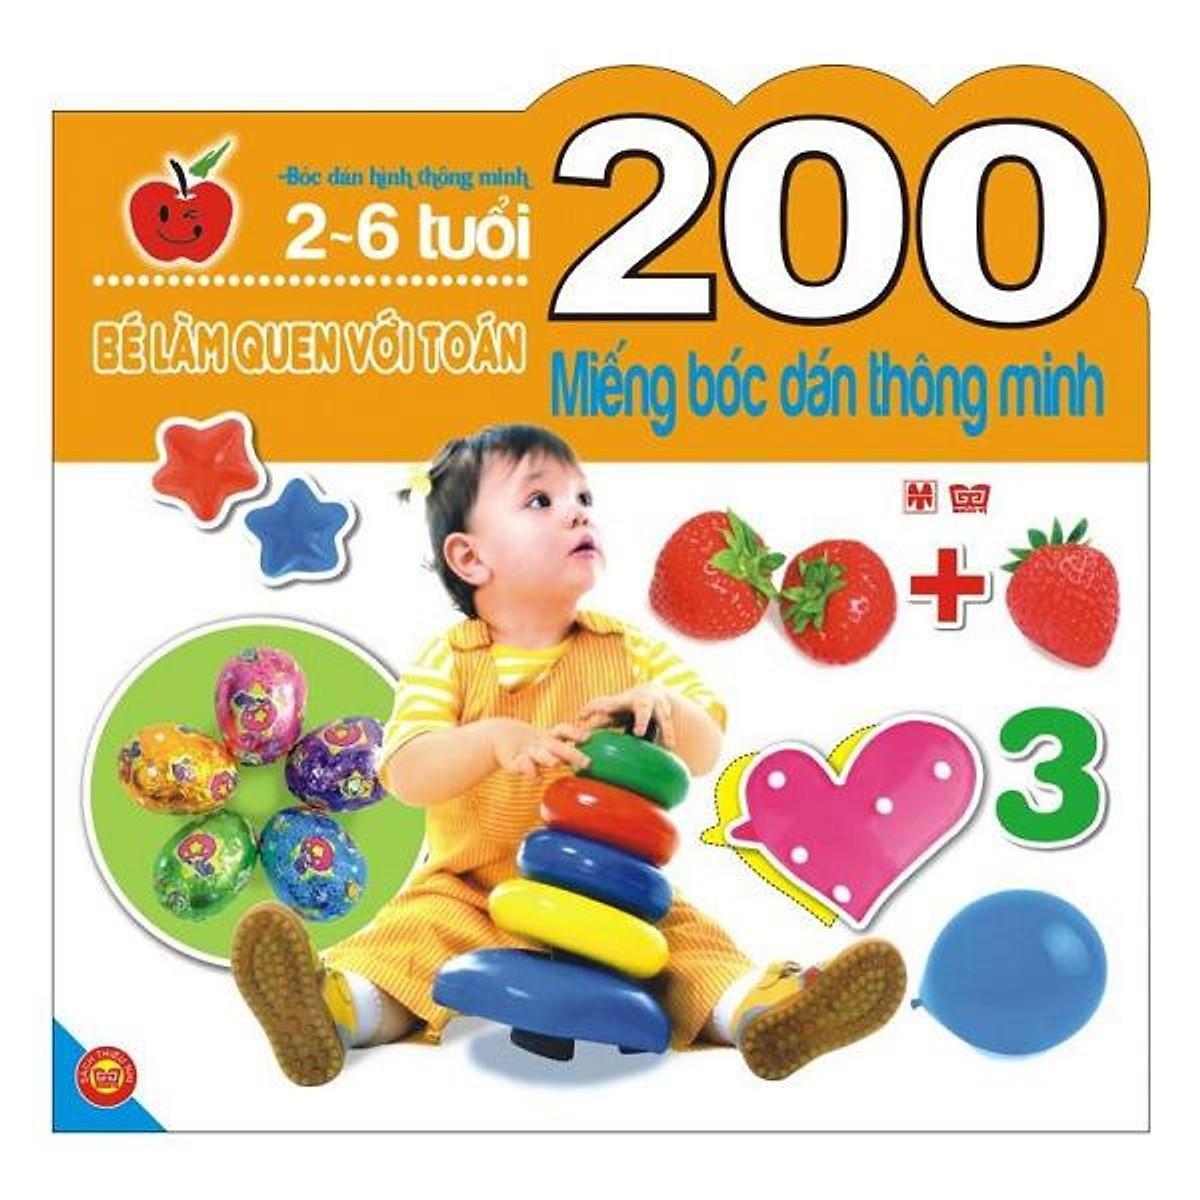 200 miếng bóc dán thông minh: Bé làm quen với toán (2 - 6 tuổi) - Nhiều tác giả